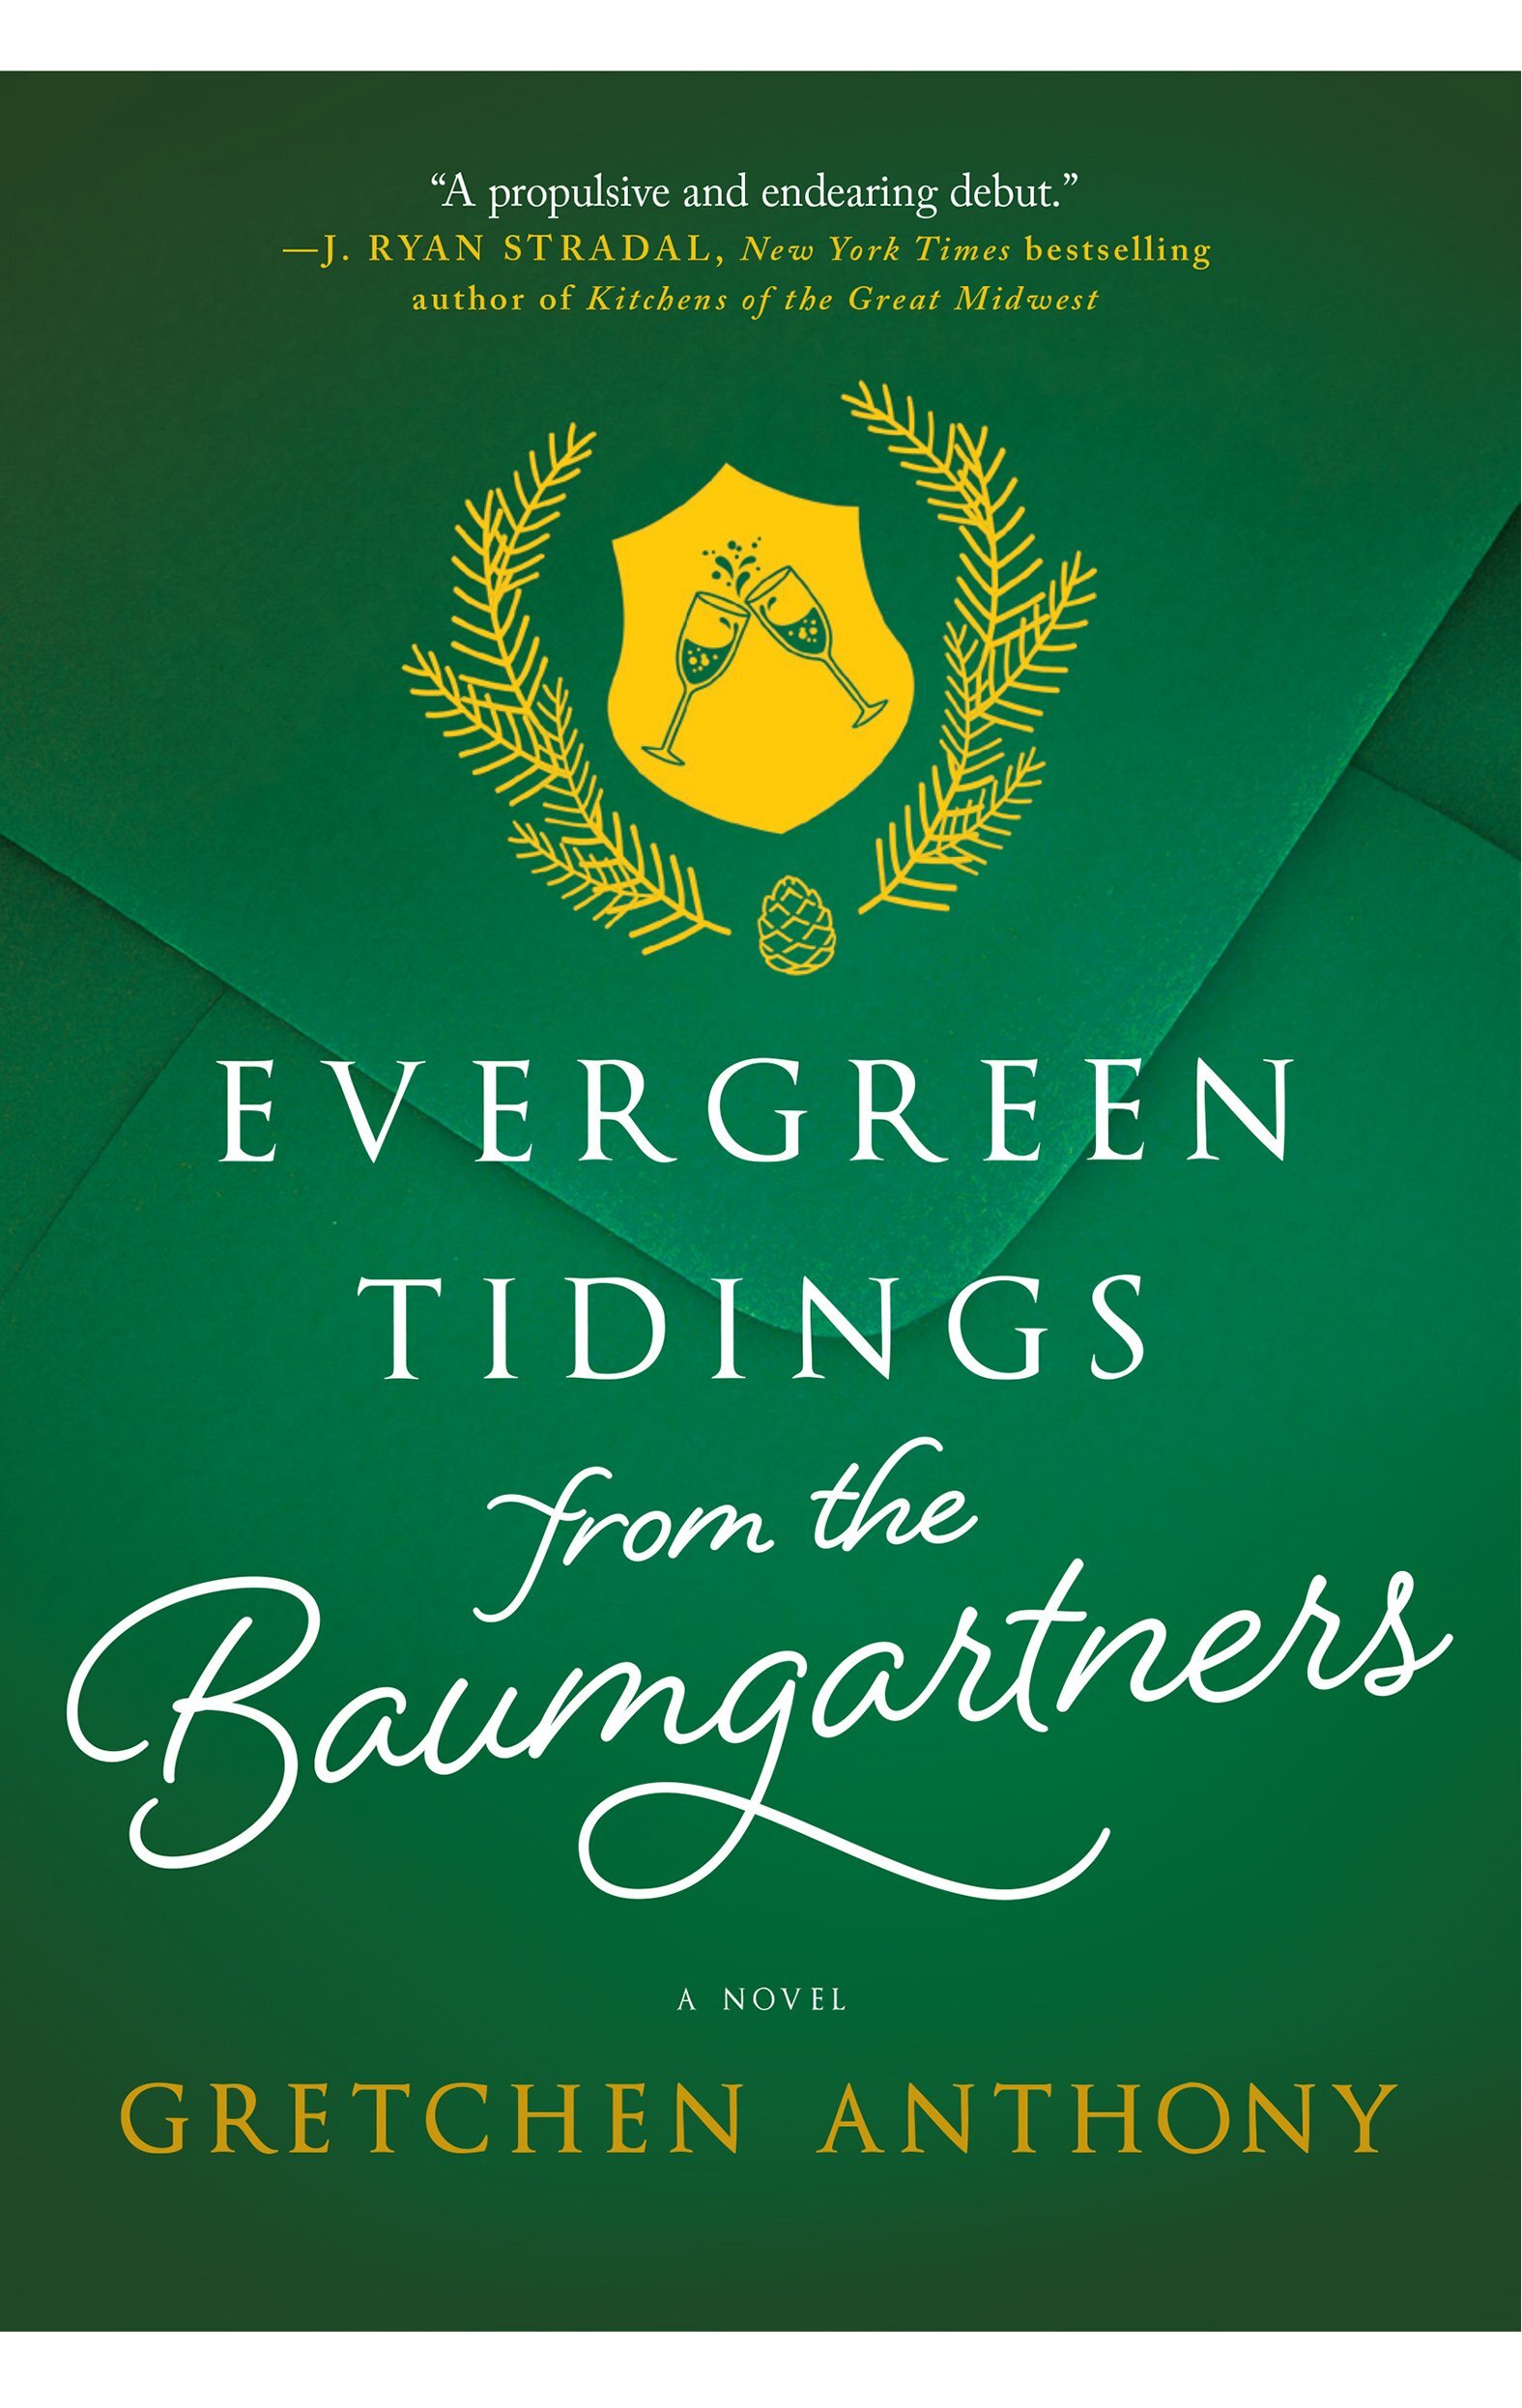 evergreen tidings final cover.jpg